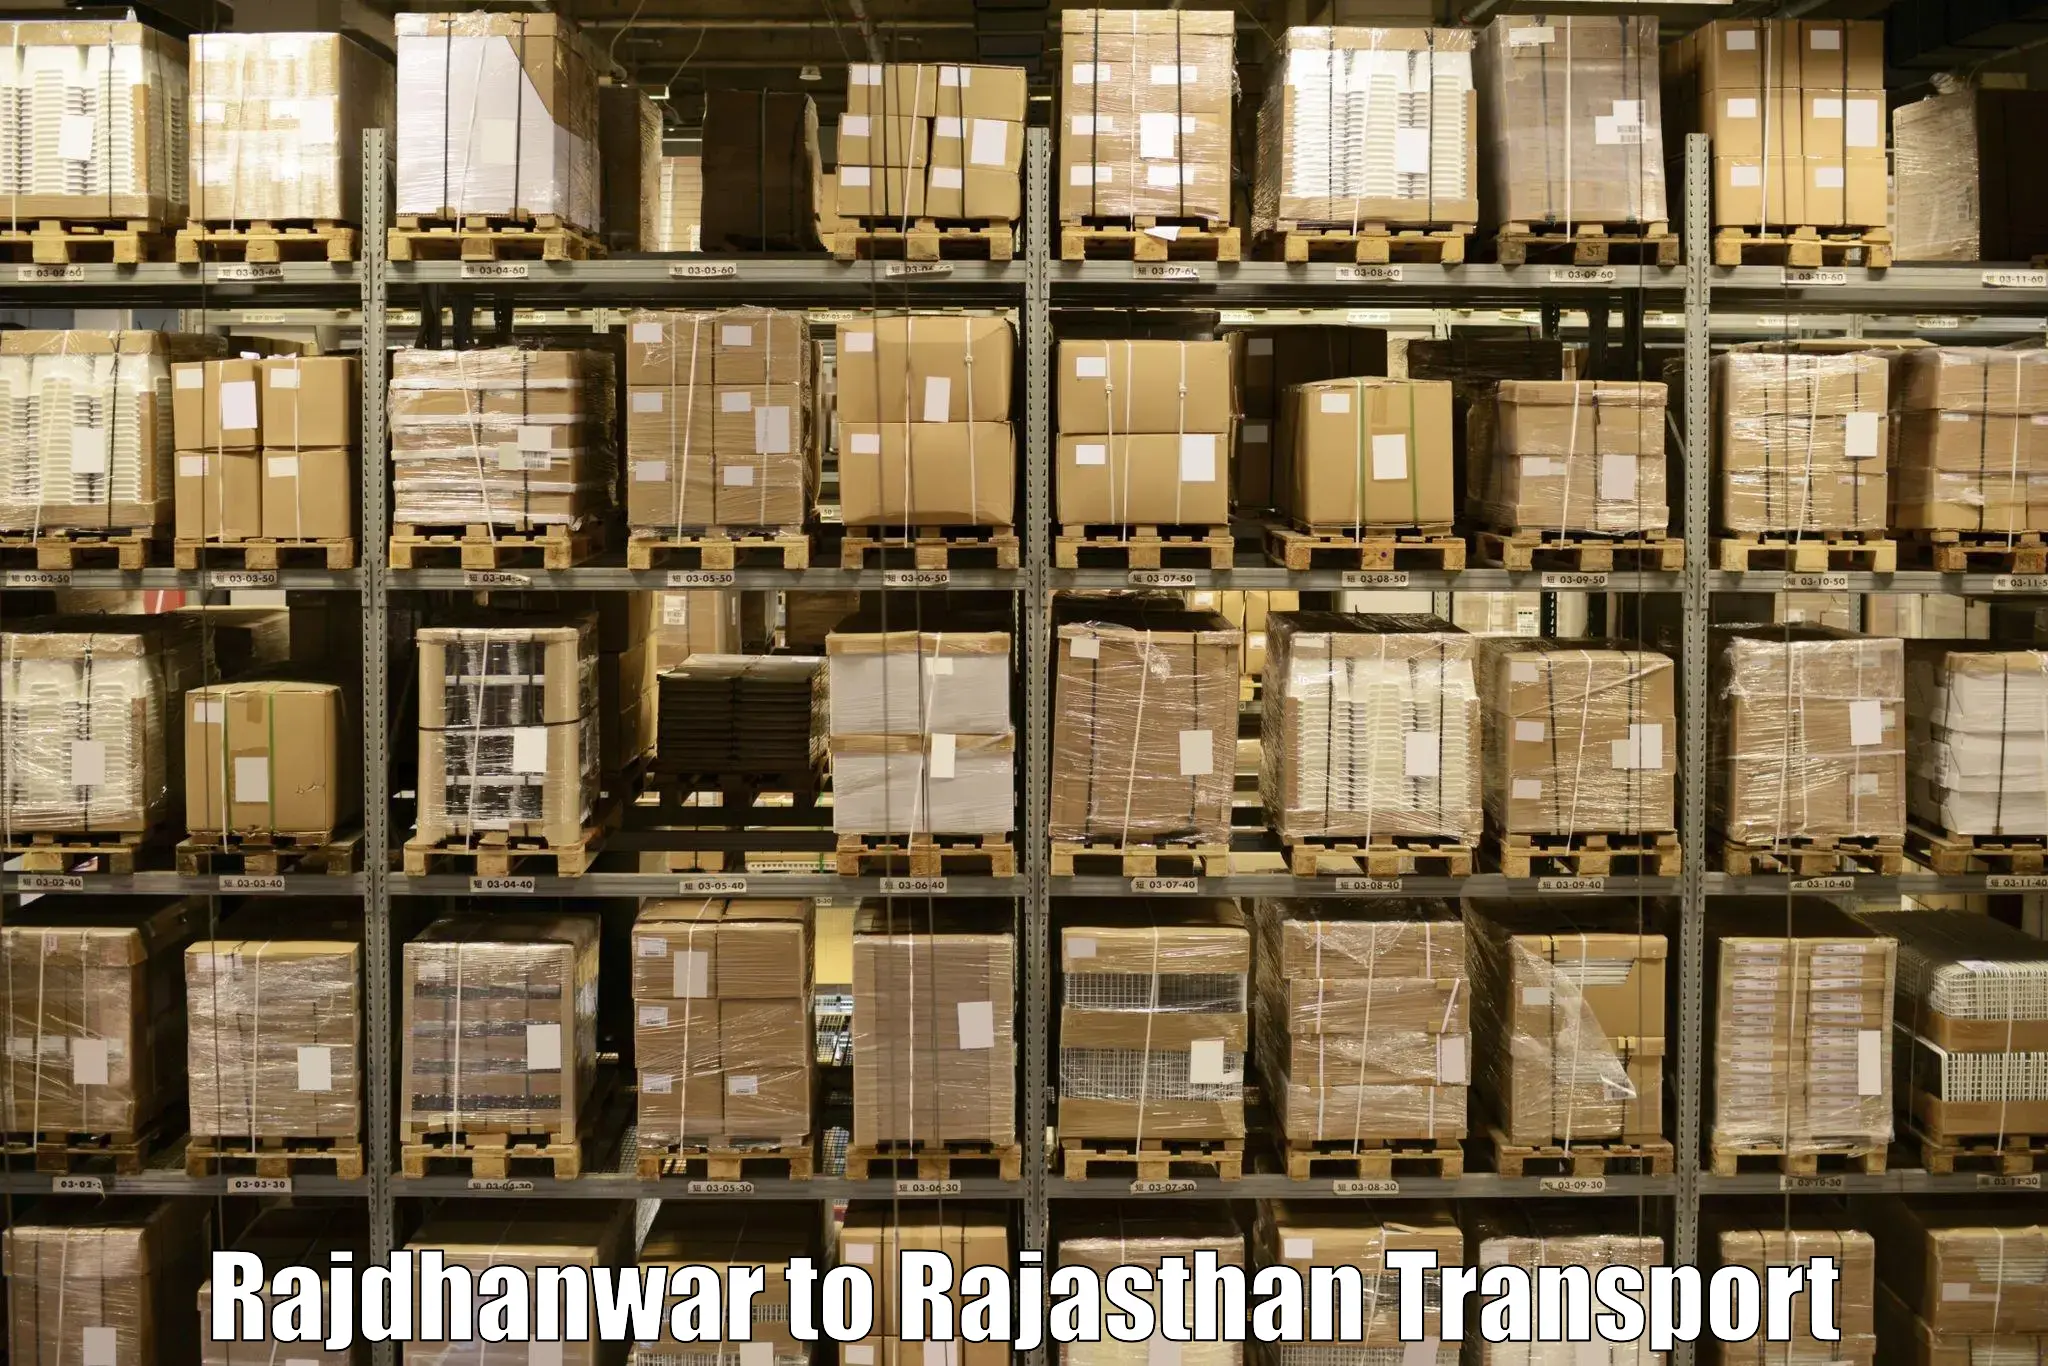 Shipping services in Rajdhanwar to Banswara